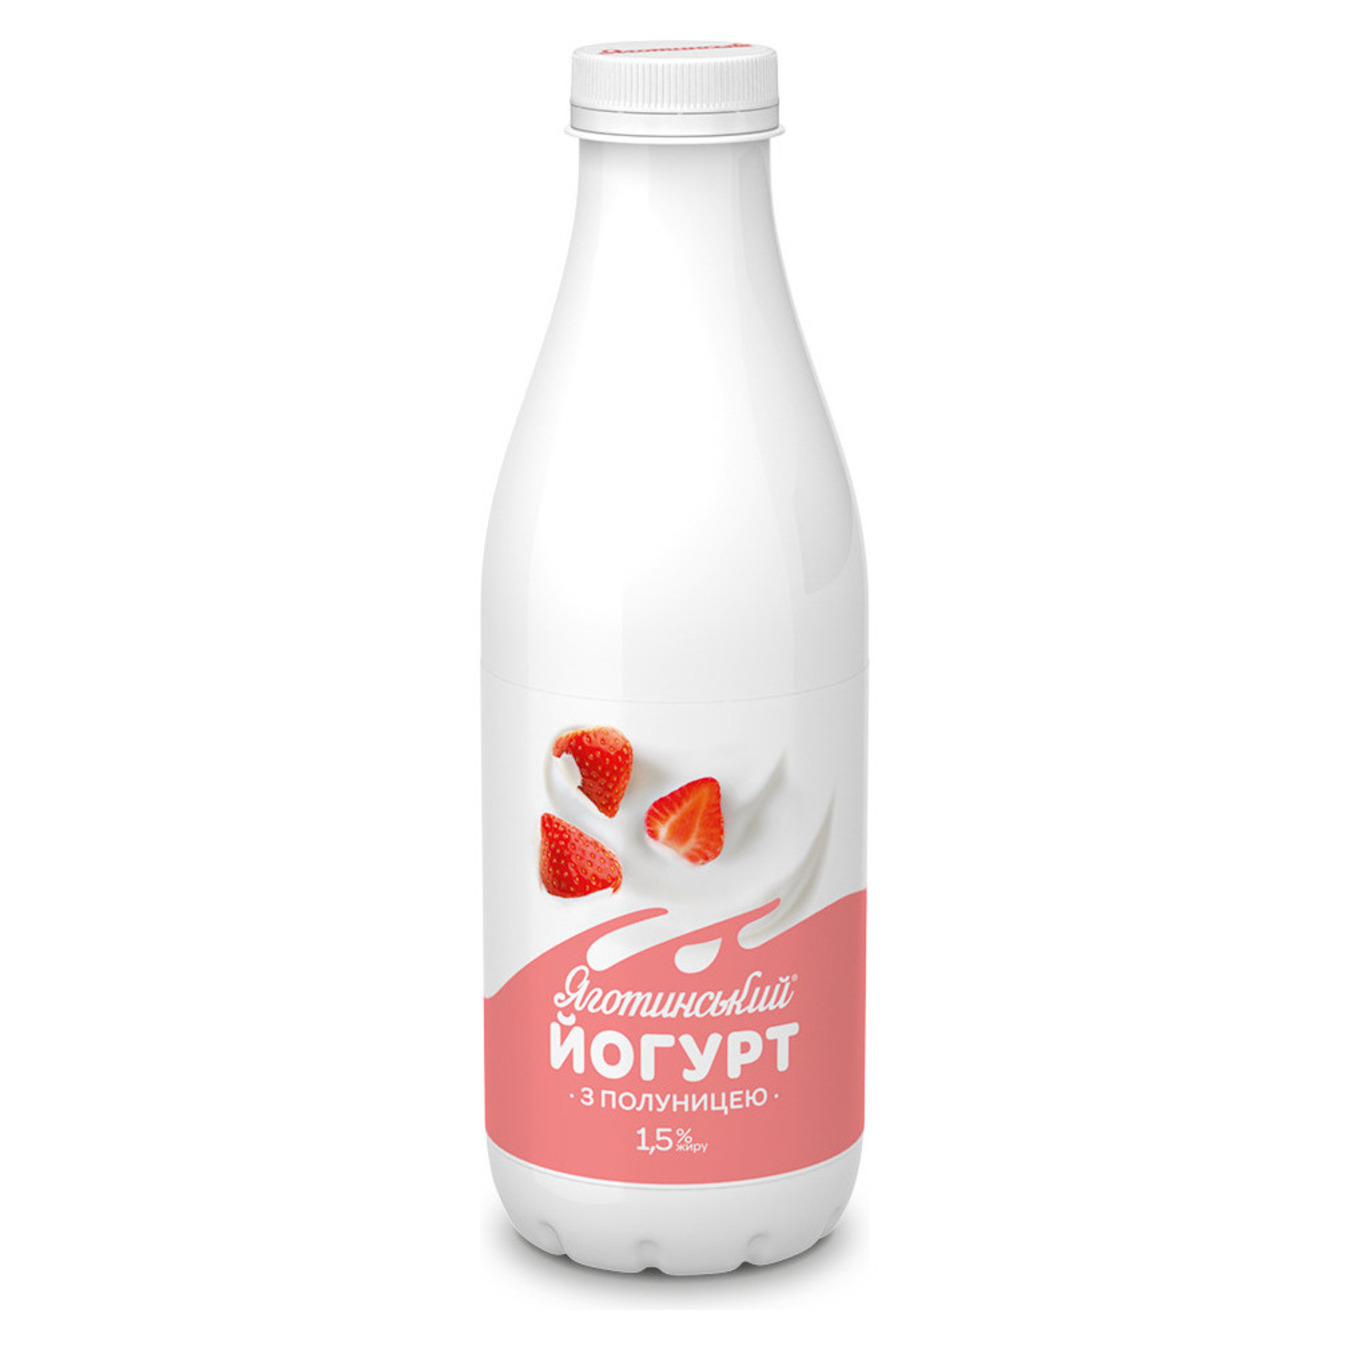 Yogurt Yagotyn strawberry 1.5% 750g bottle